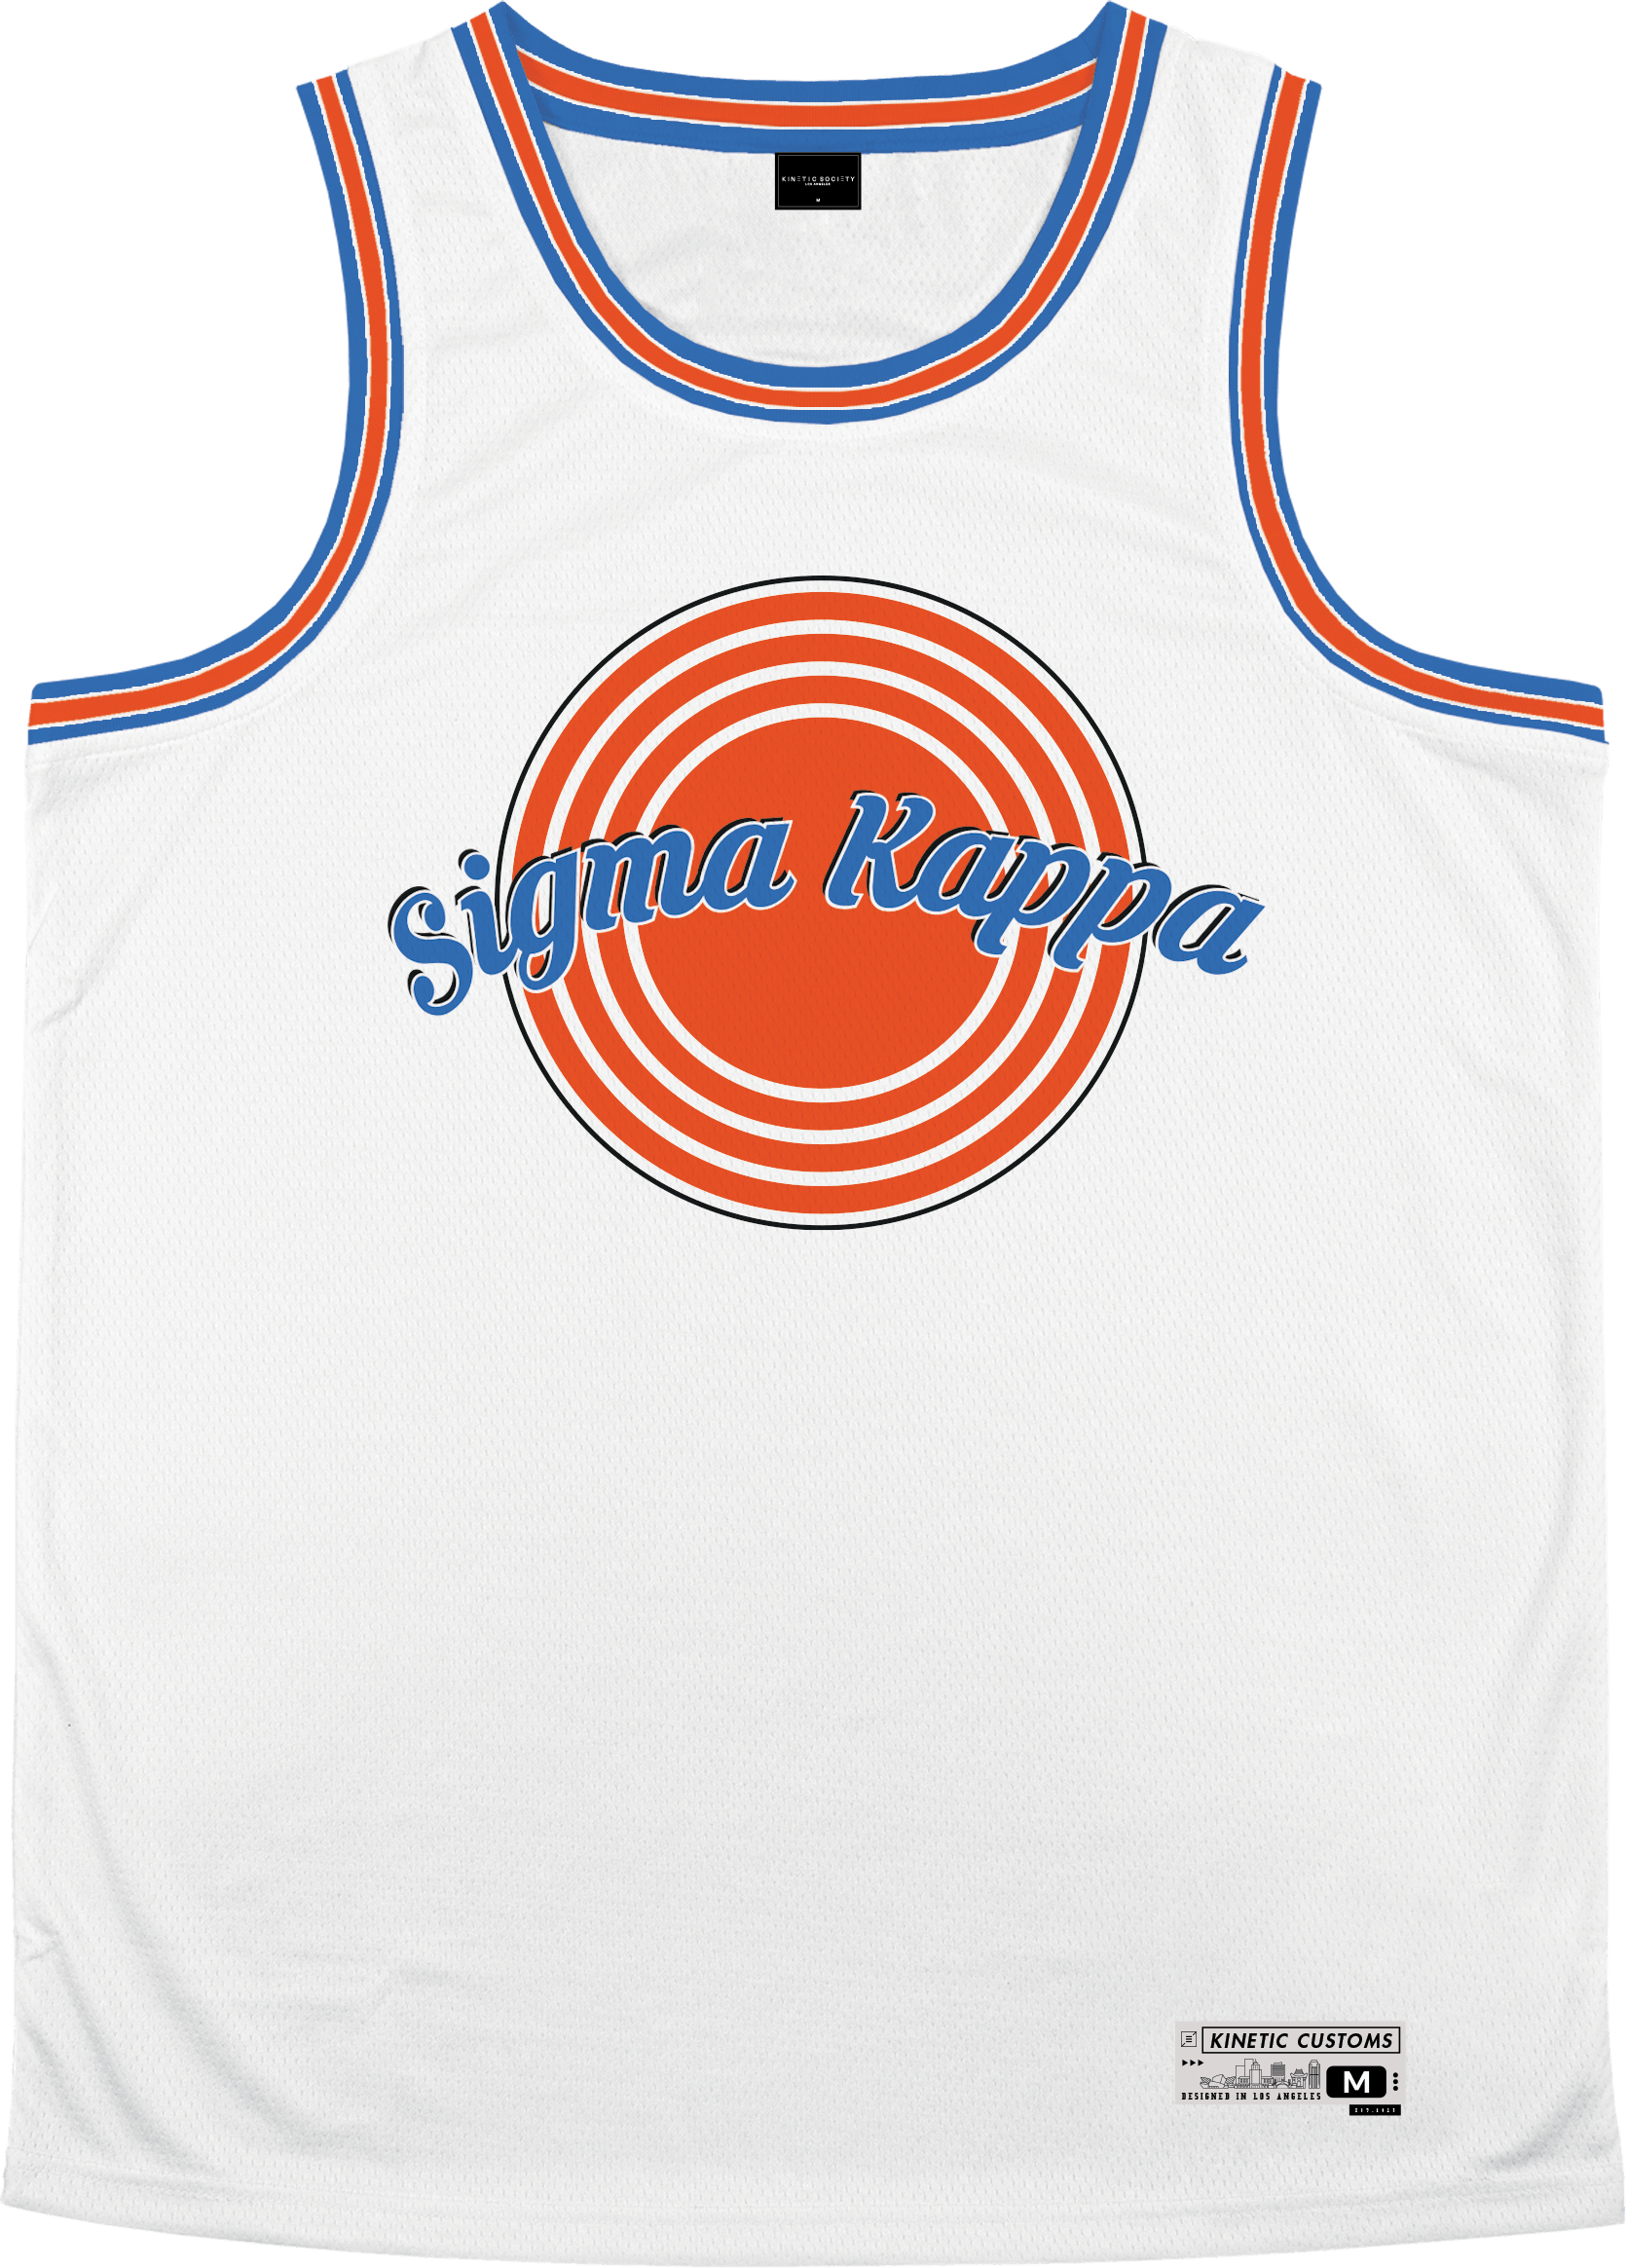 Sigma Kappa - Vintage Basketball Jersey Premium Basketball Kinetic Society LLC 